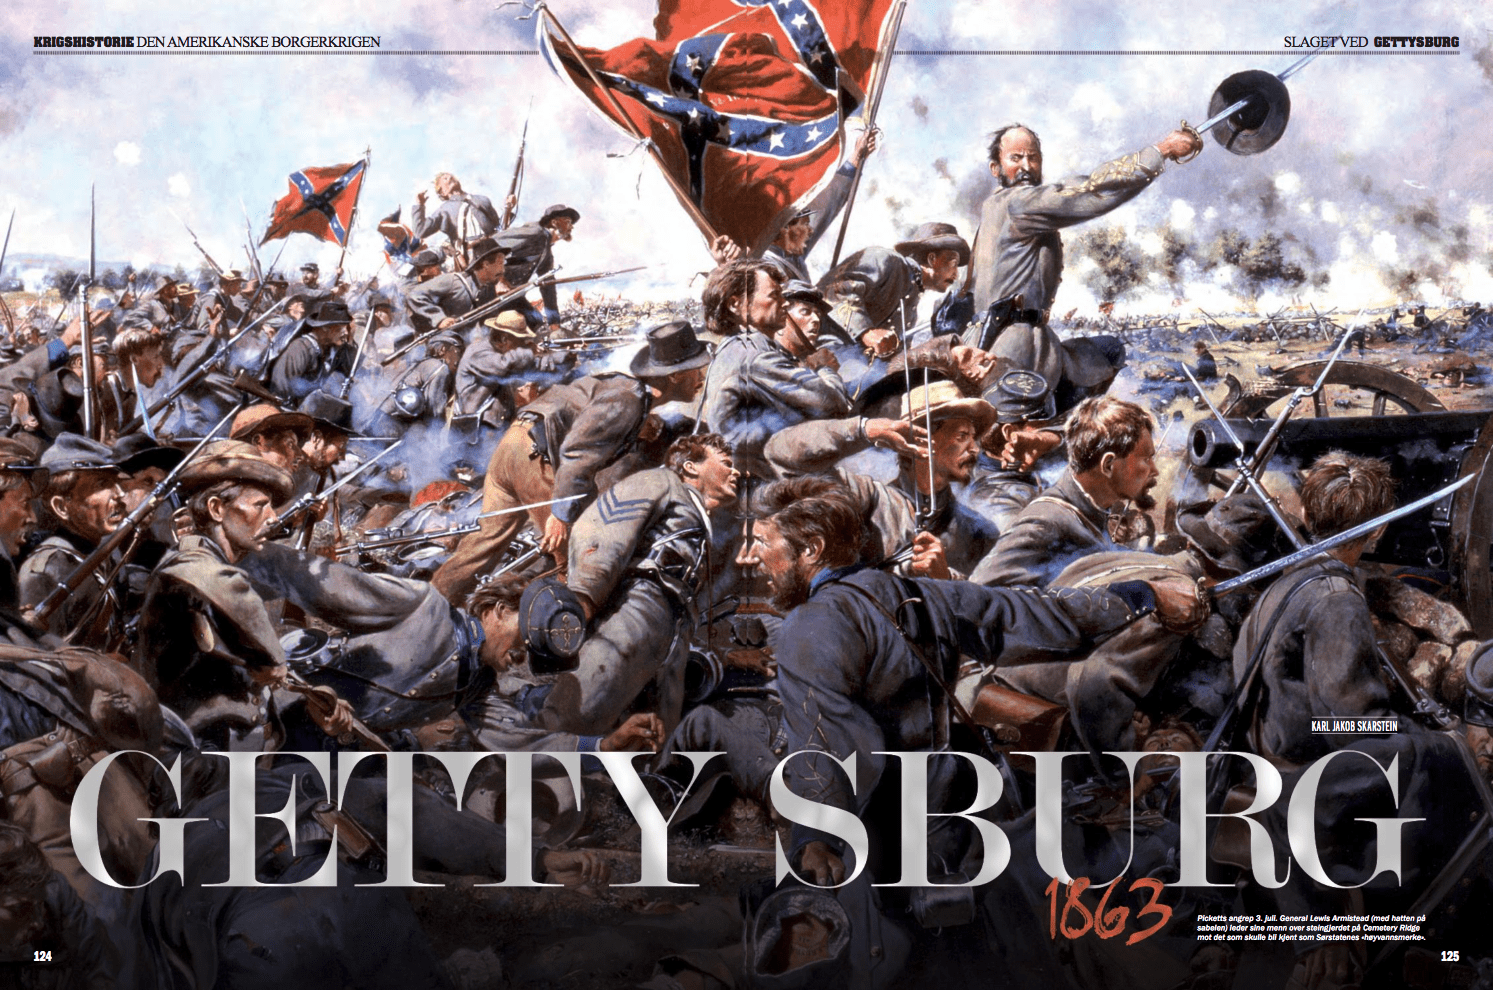 Slaget ved Gettysburg 1863, oppslag